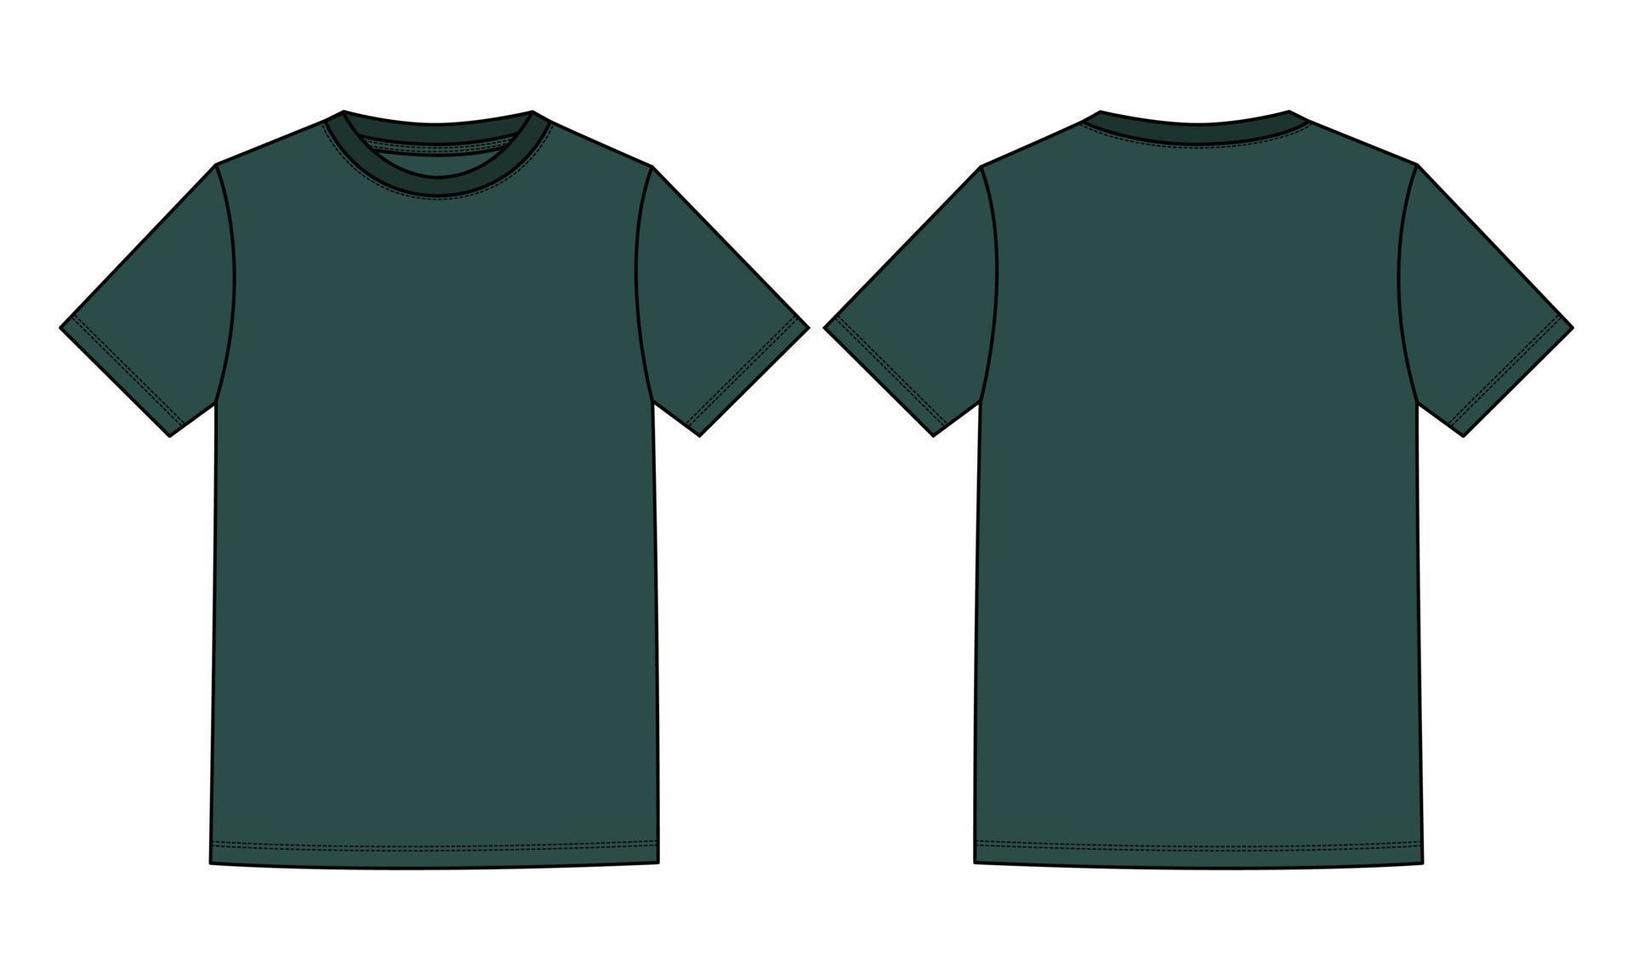 T-shirt basic a manica corta tecnica moda schizzo piatto illustrazione vettoriale modello colore verde viste anteriore e posteriore isolate su sfondo bianco.